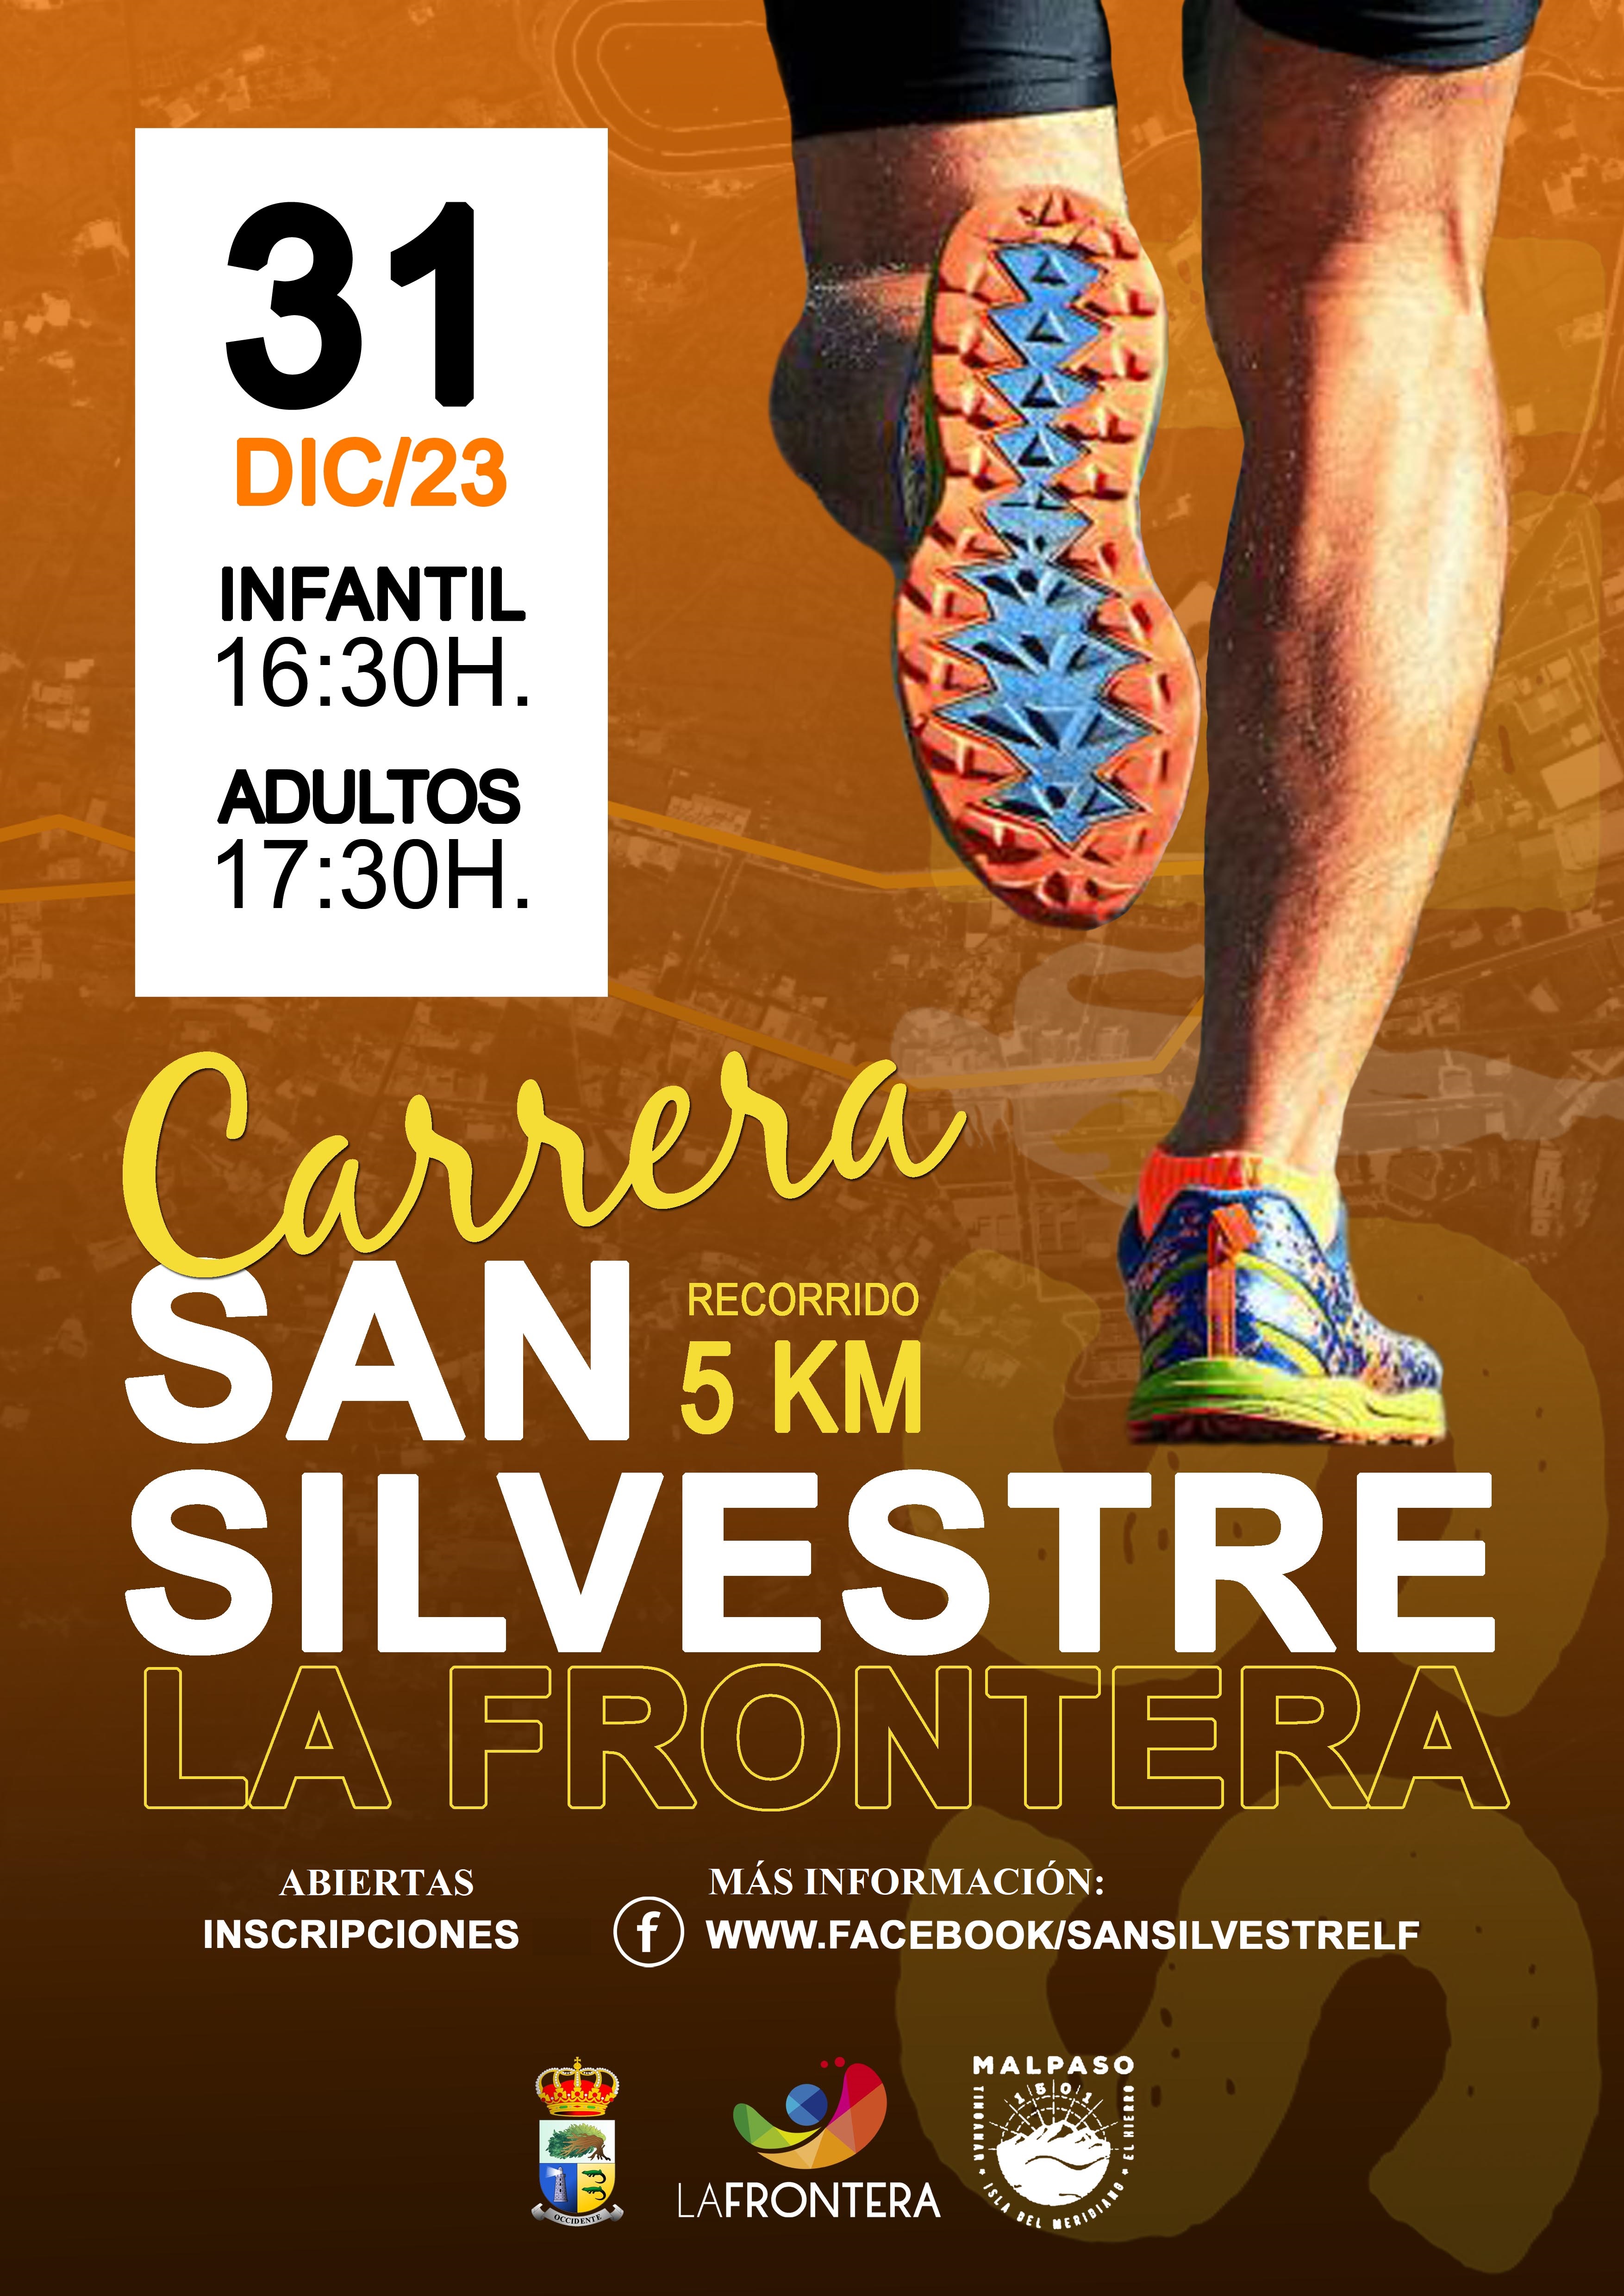 La cita con la carrera San Silvestre será el 31 de diciembre